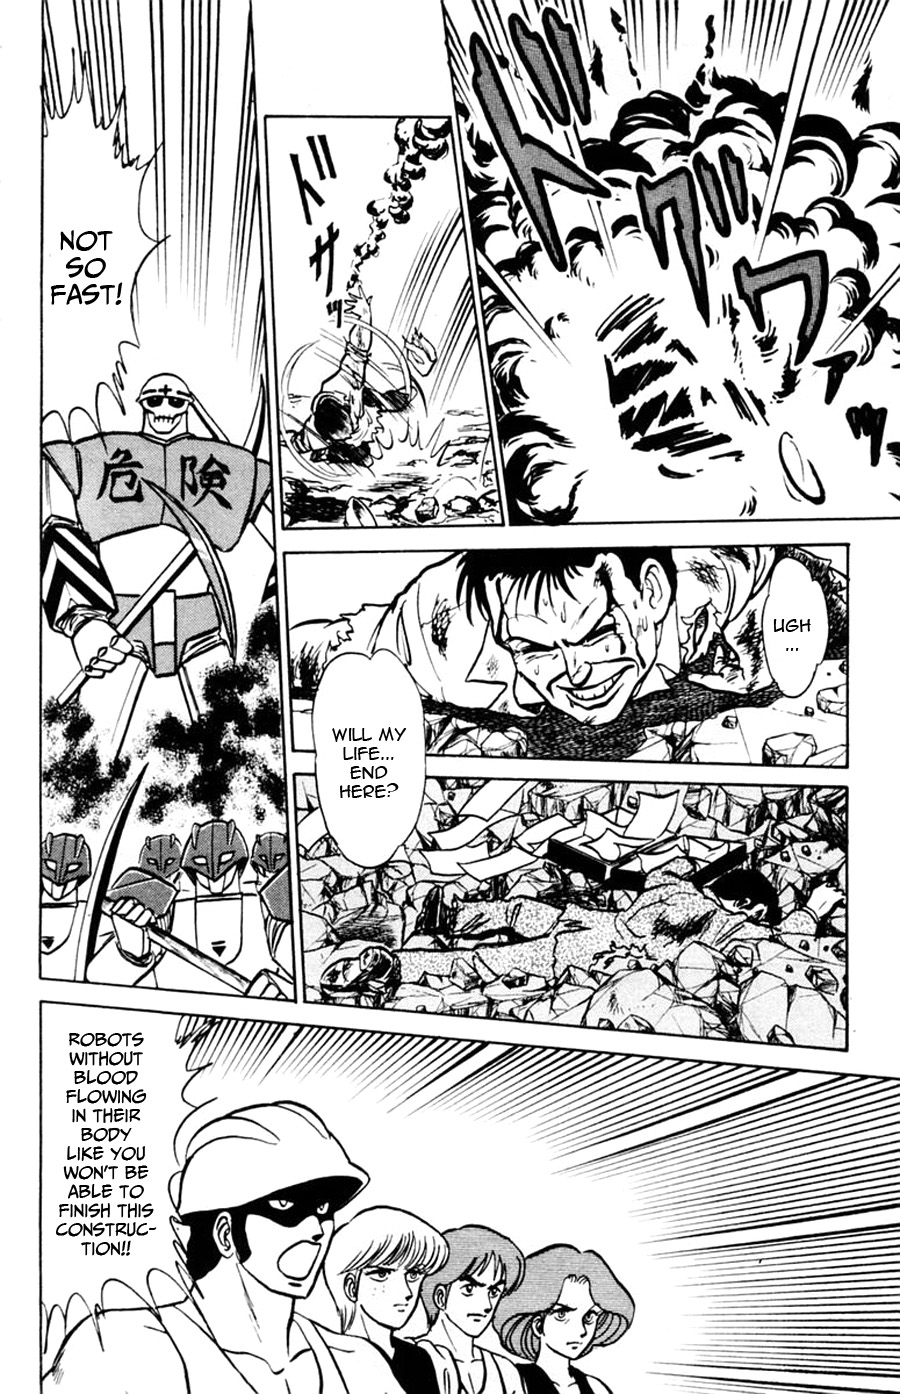 Yuu & Mii Vol. 8 Ch. 48 Michio Kouji's Story (Part 2)